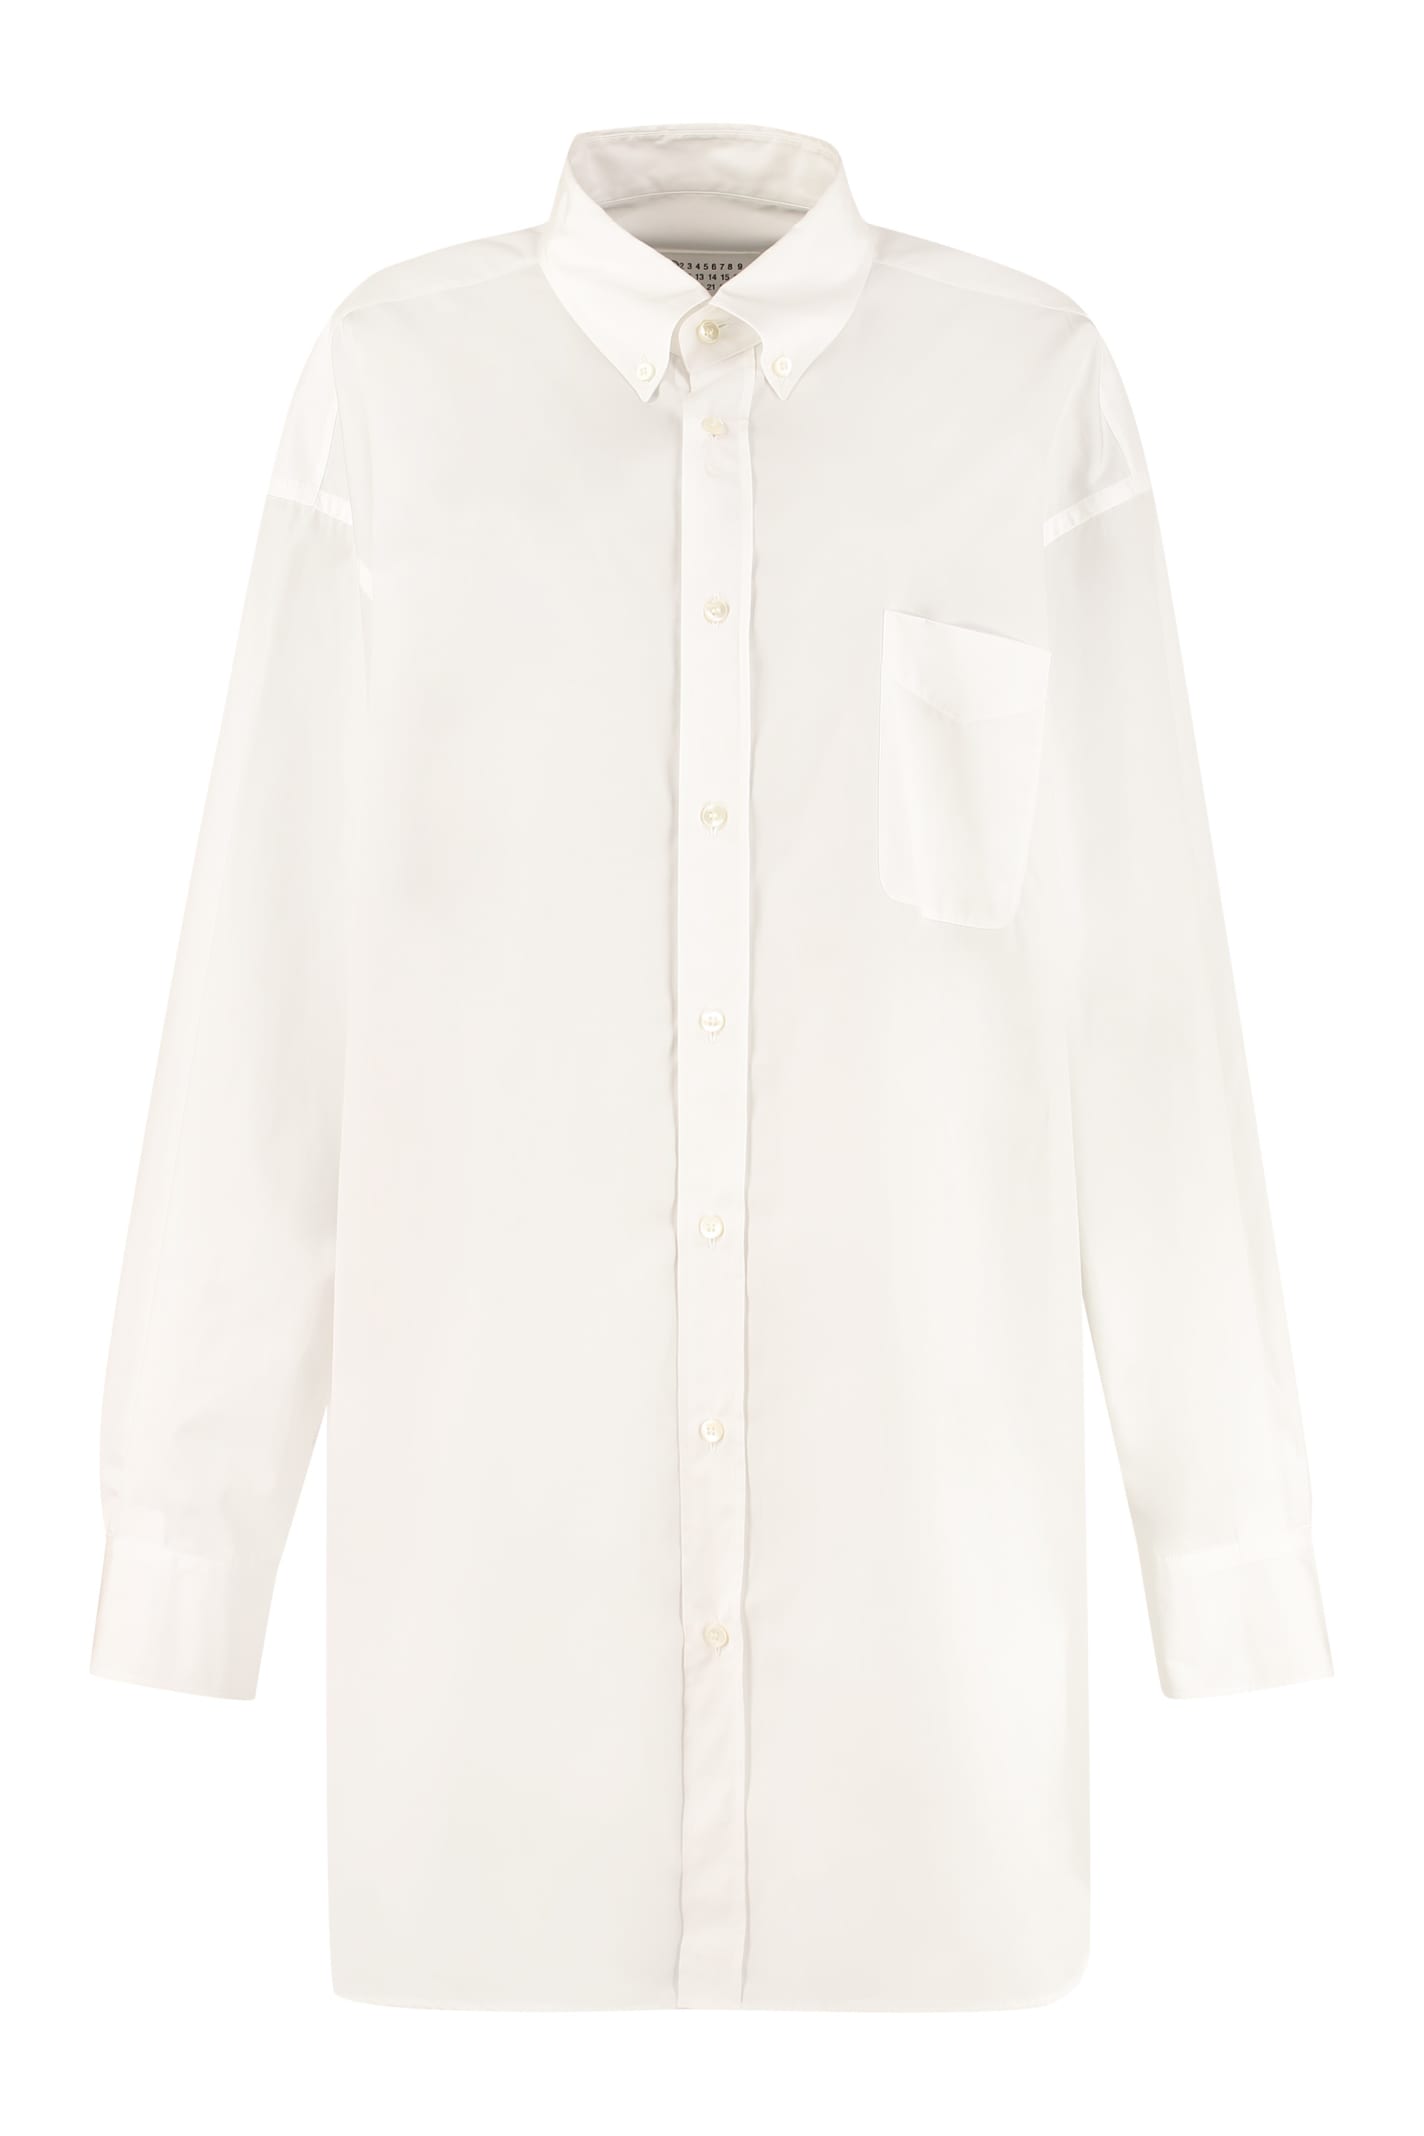 Maison Margiela Cotton Button-down Shirt